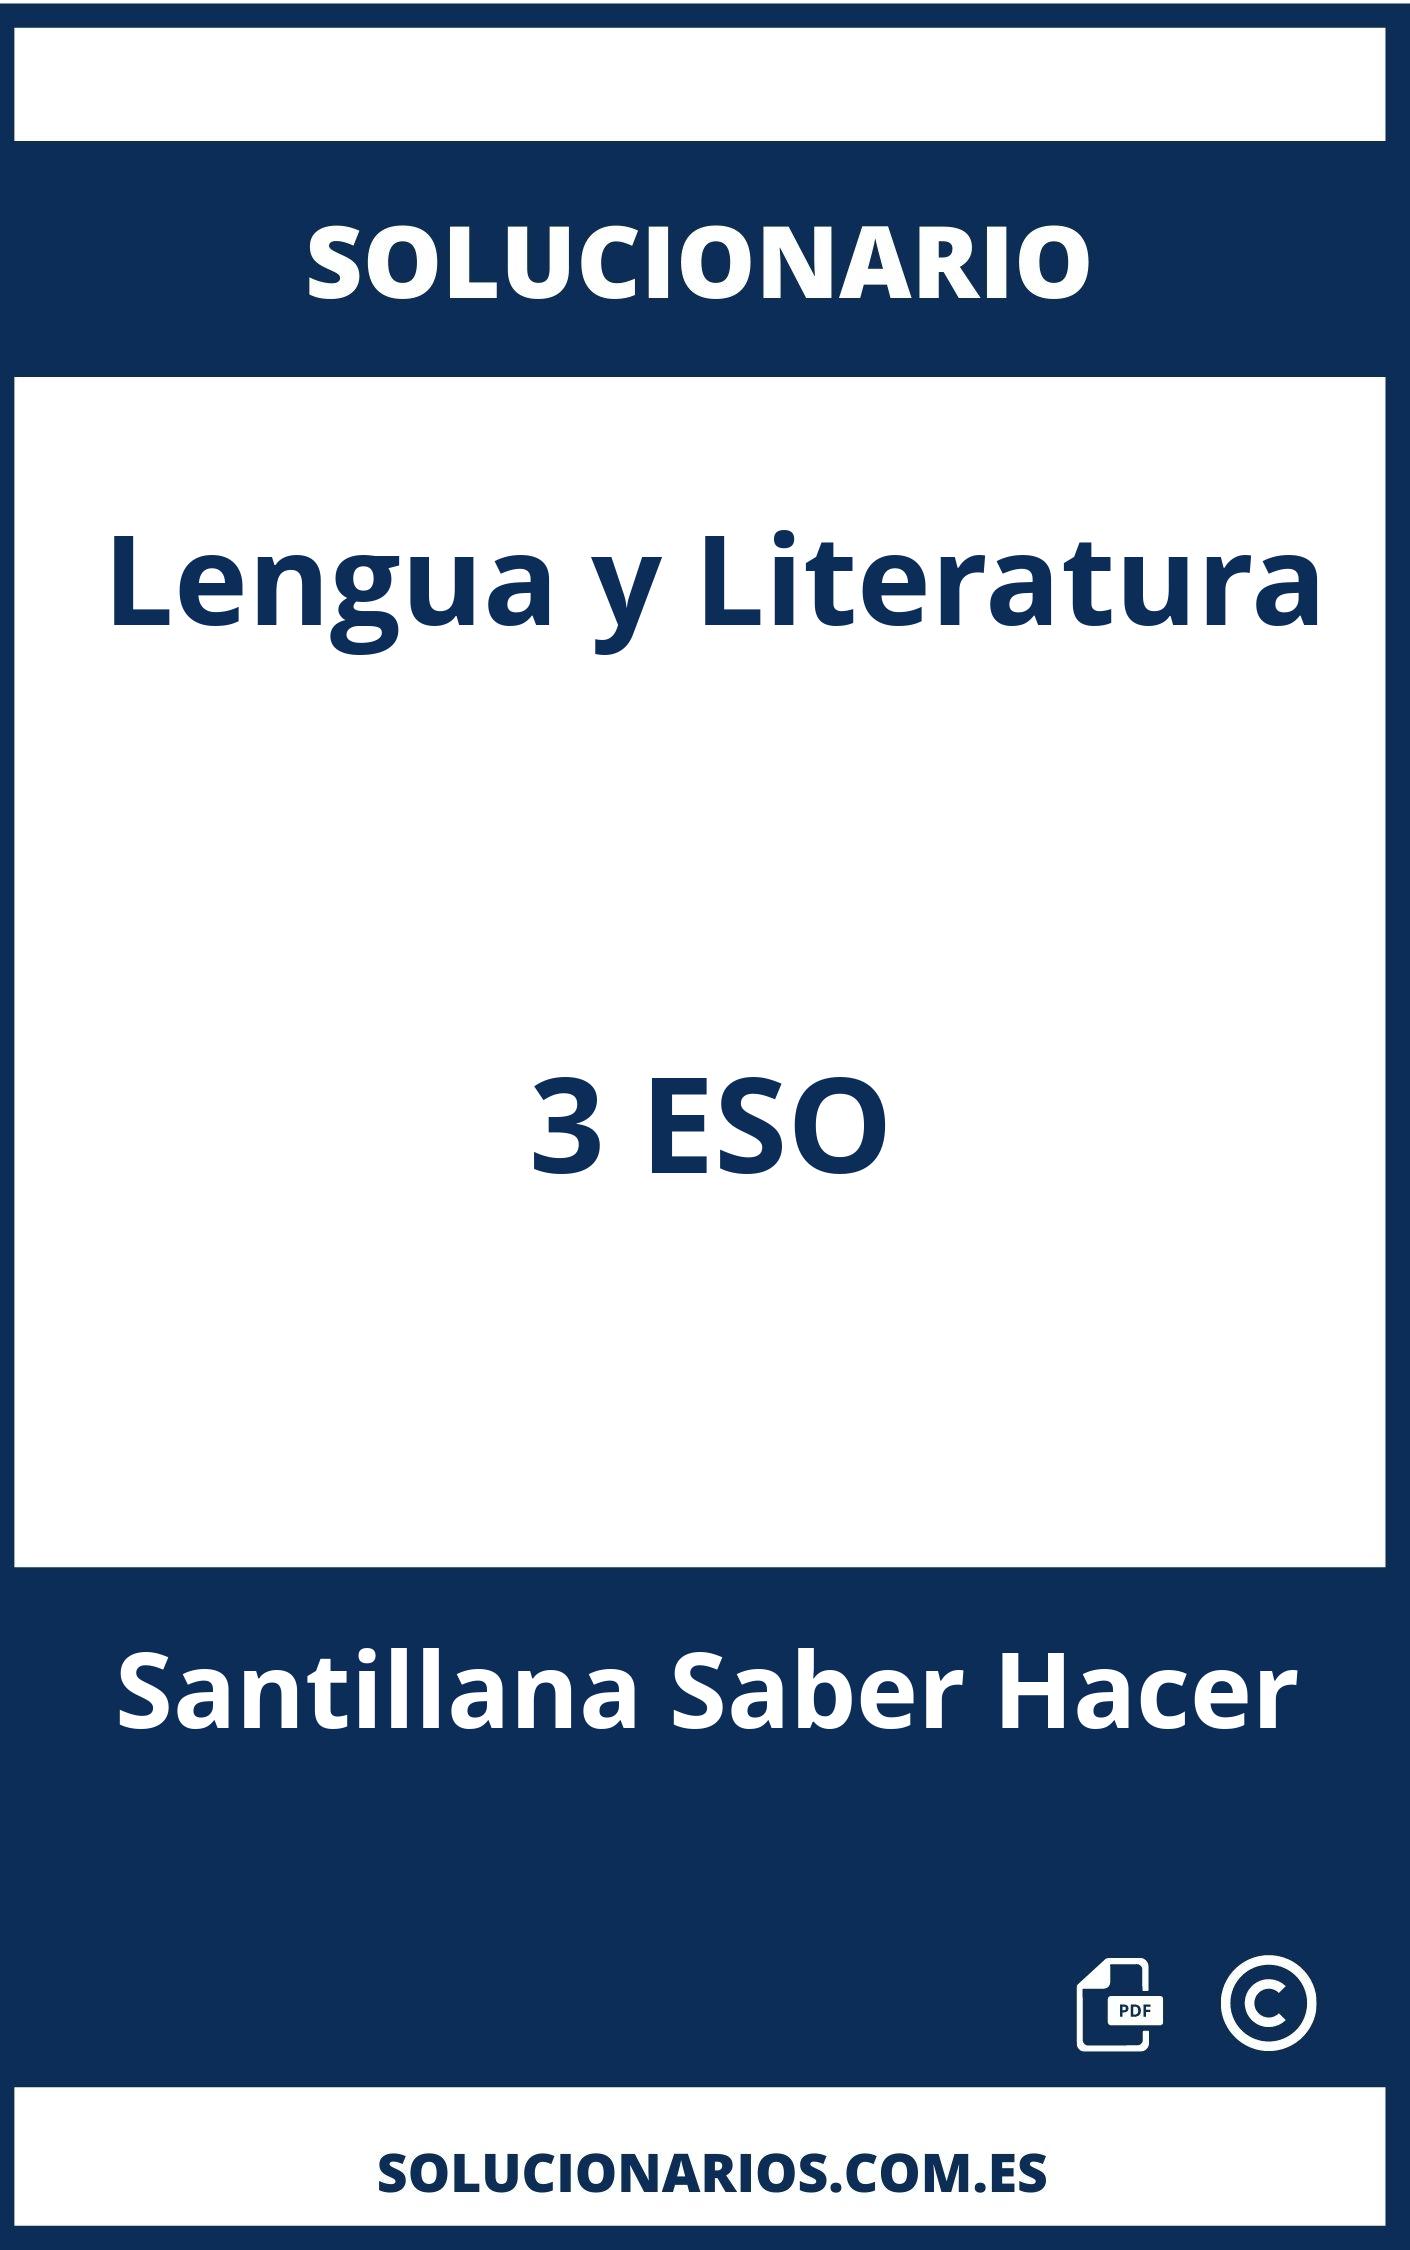 Solucionario Lengua y Literatura 3 ESO Santillana Saber Hacer